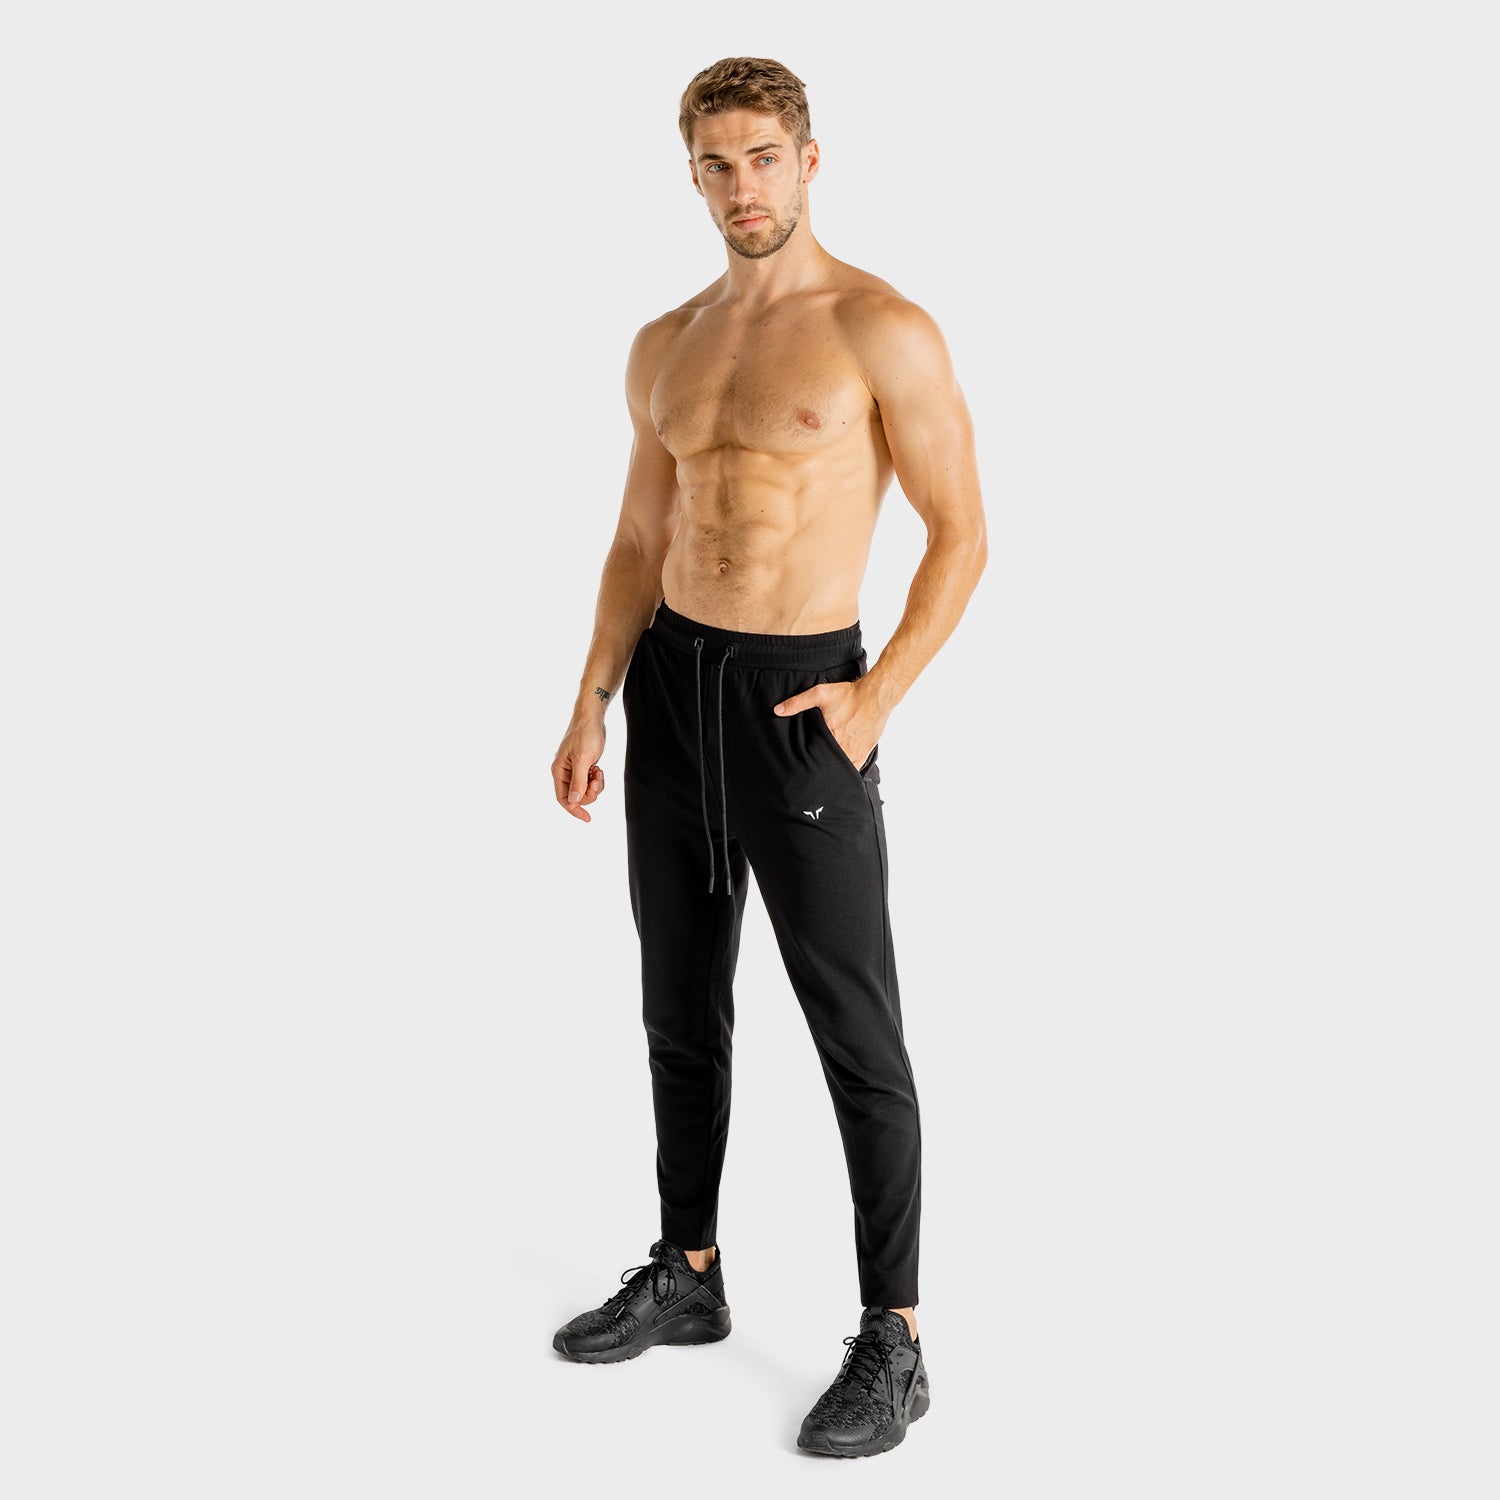 squatwolf-gym-wear-core-joggers-black-workout-pants-for-men